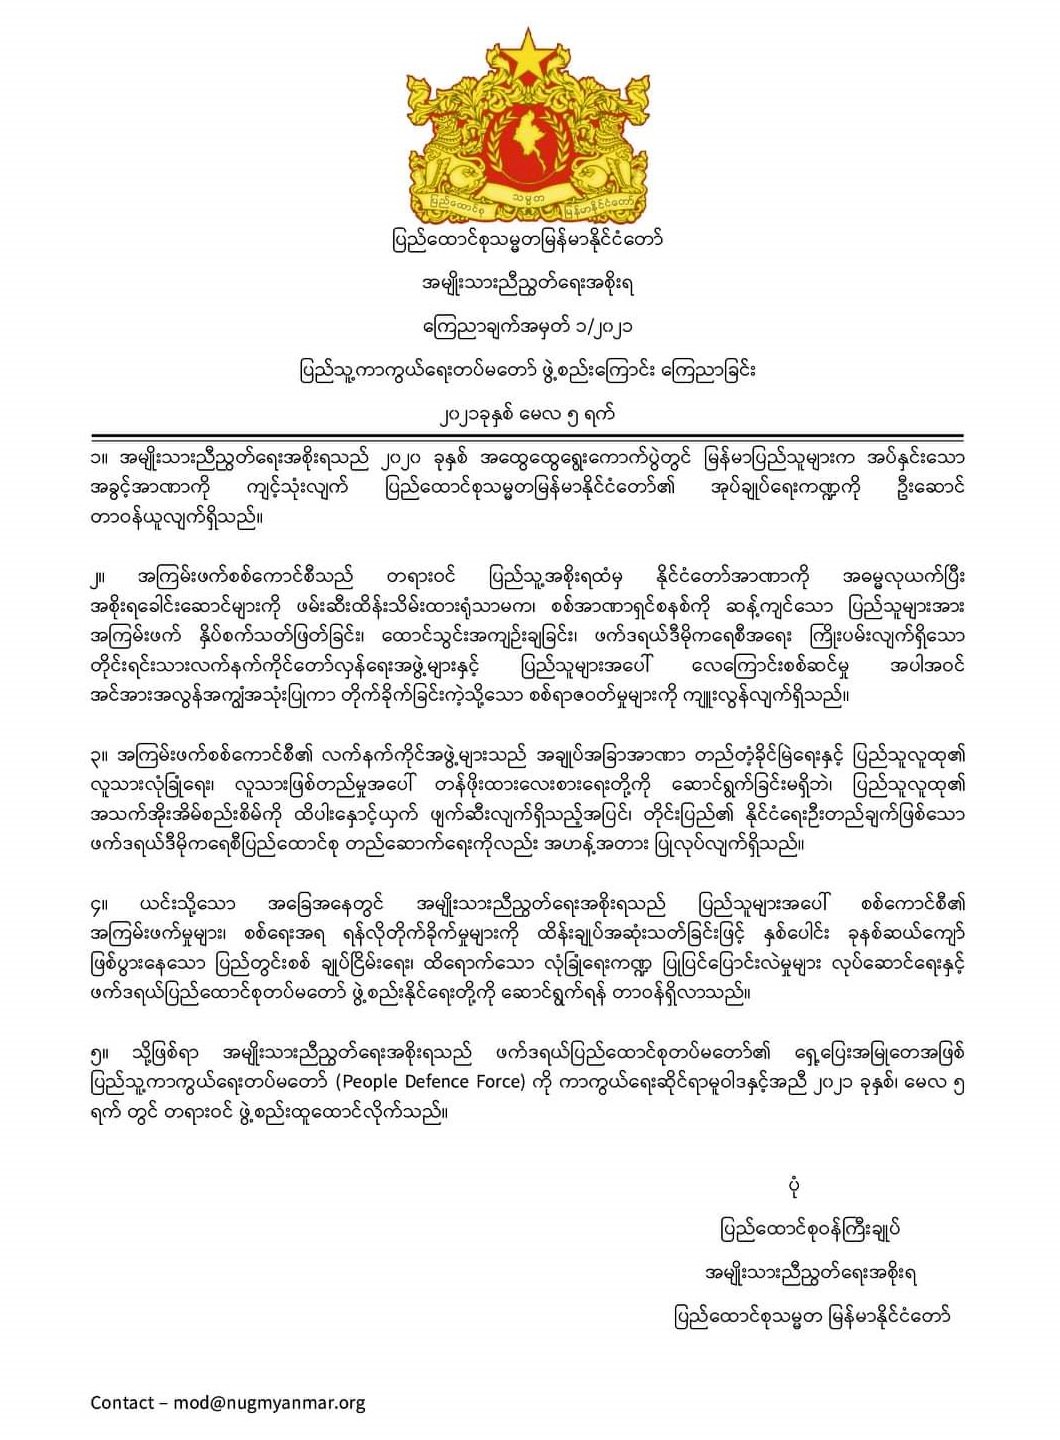 緬甸反對派團結政府宣布 組成人民防衛部隊